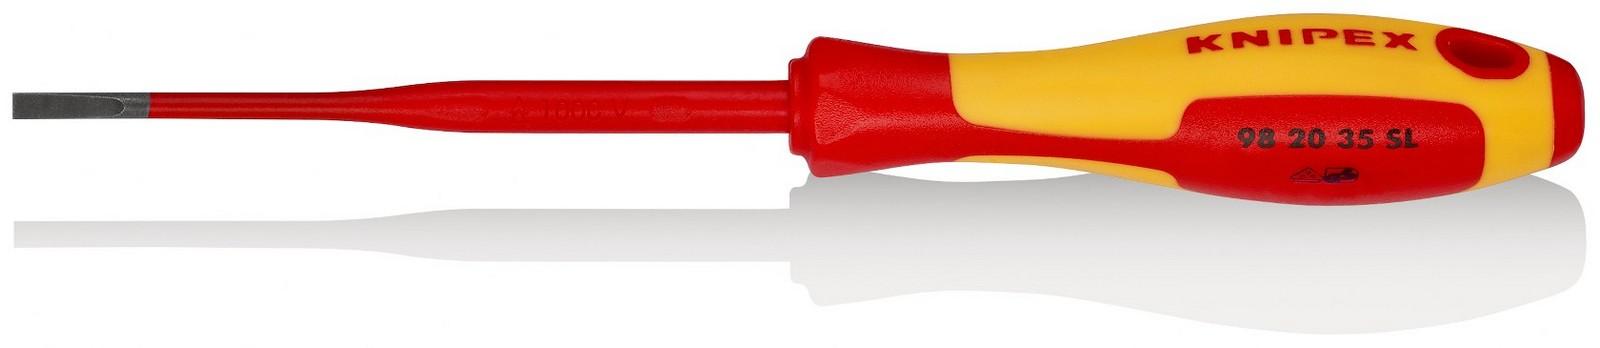 KNIPEX Odvijač Slim ravni 1000V VDE 3.5mm 98 20 35 SL crveno-žuti